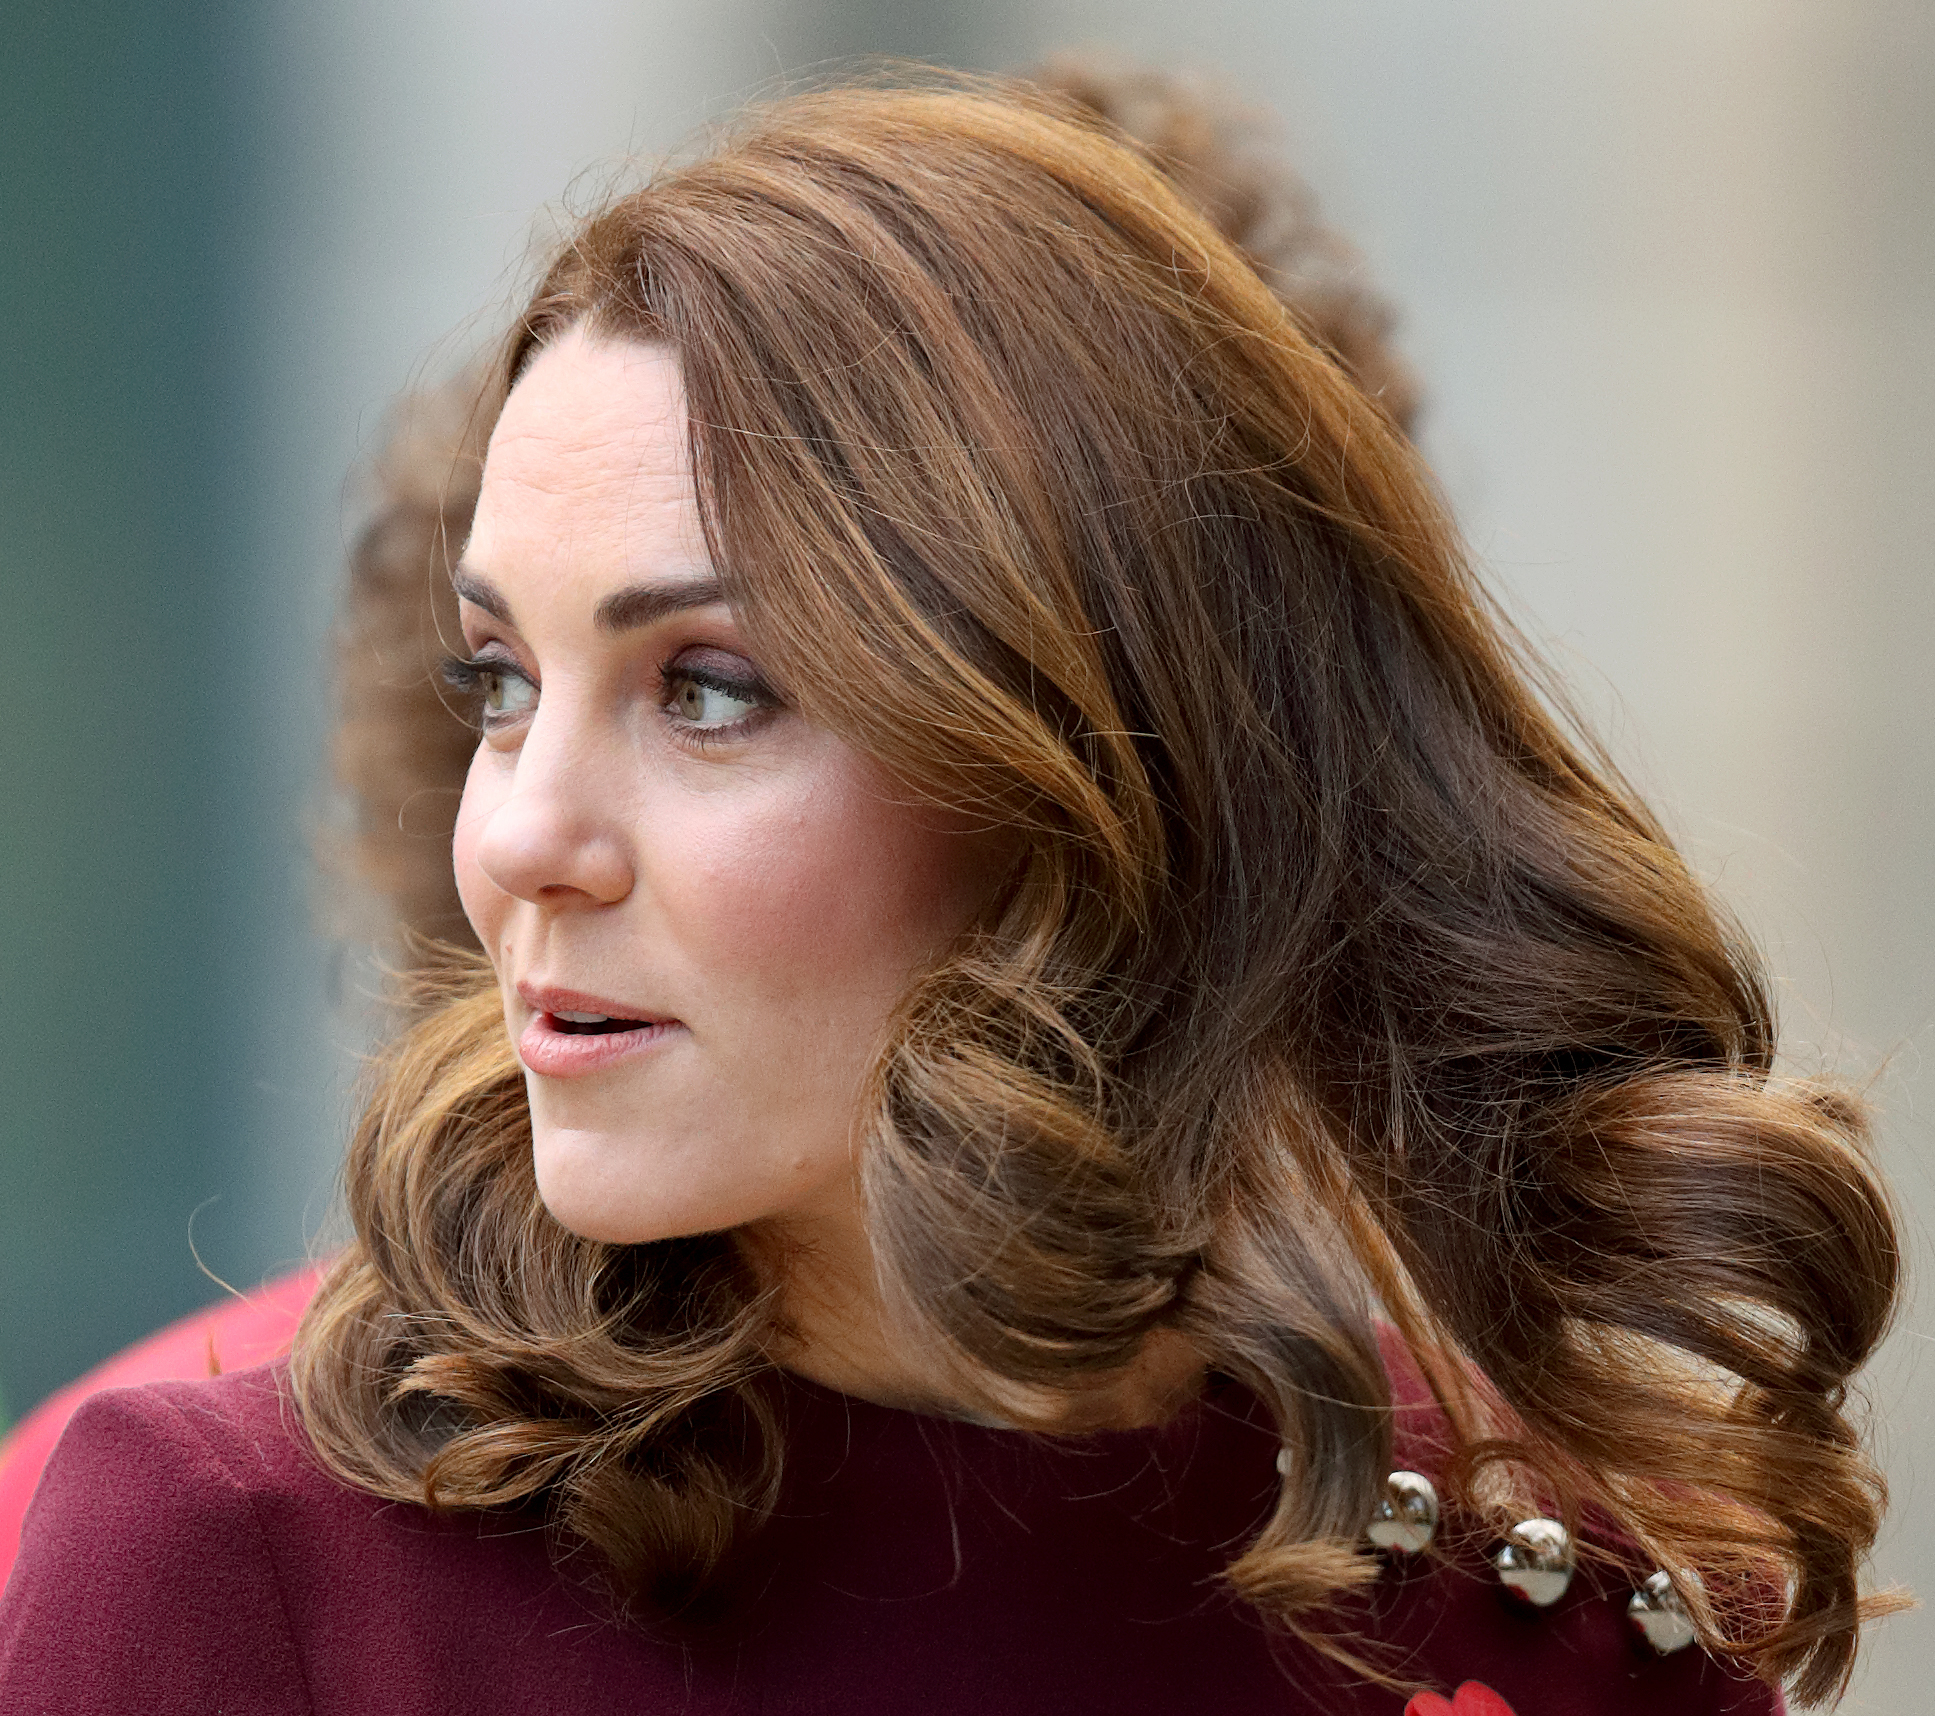 La princesse de Galles, Kate Middleton à Londres en 2017 | Source : Getty Images